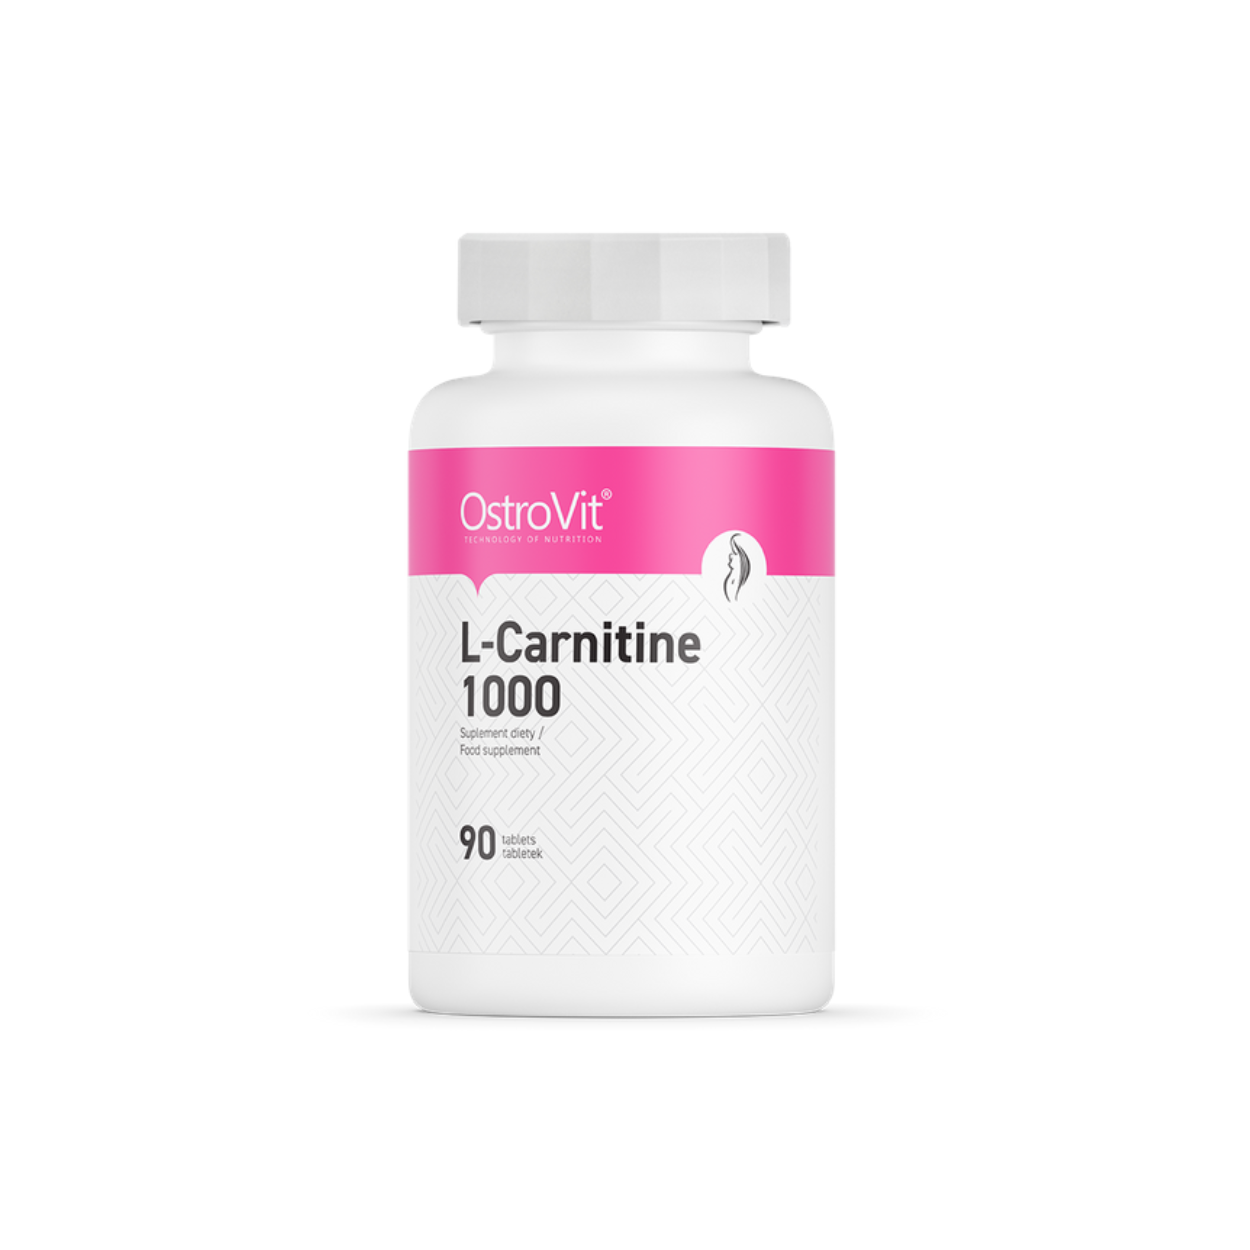 OstroVit L-Carnitine 1000 (90 Tabletten)